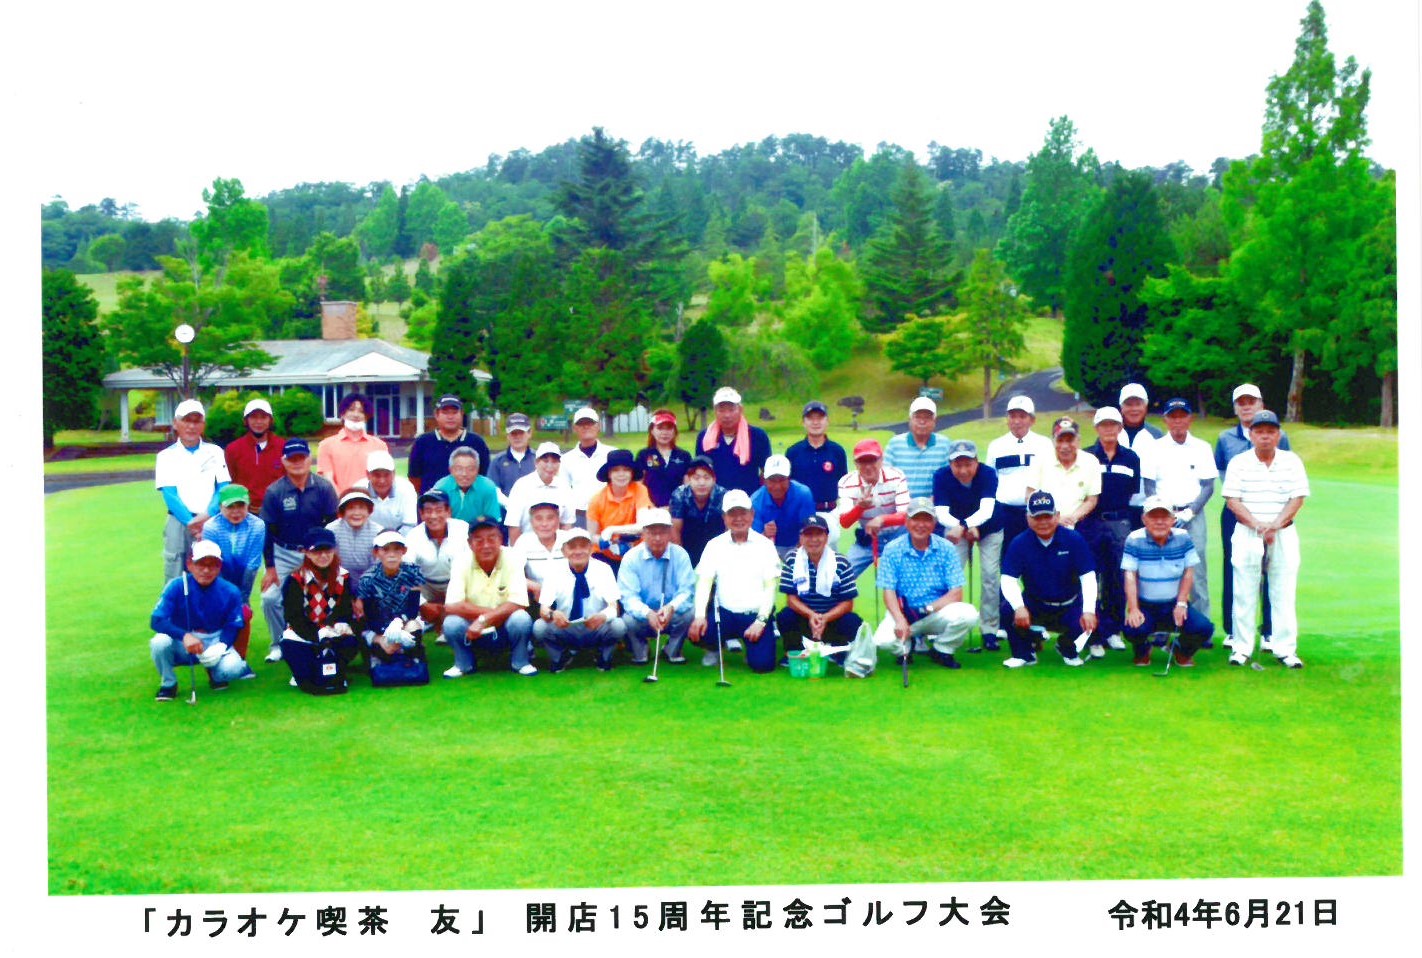 ゴルフ場、コンペ参加者での記念撮影